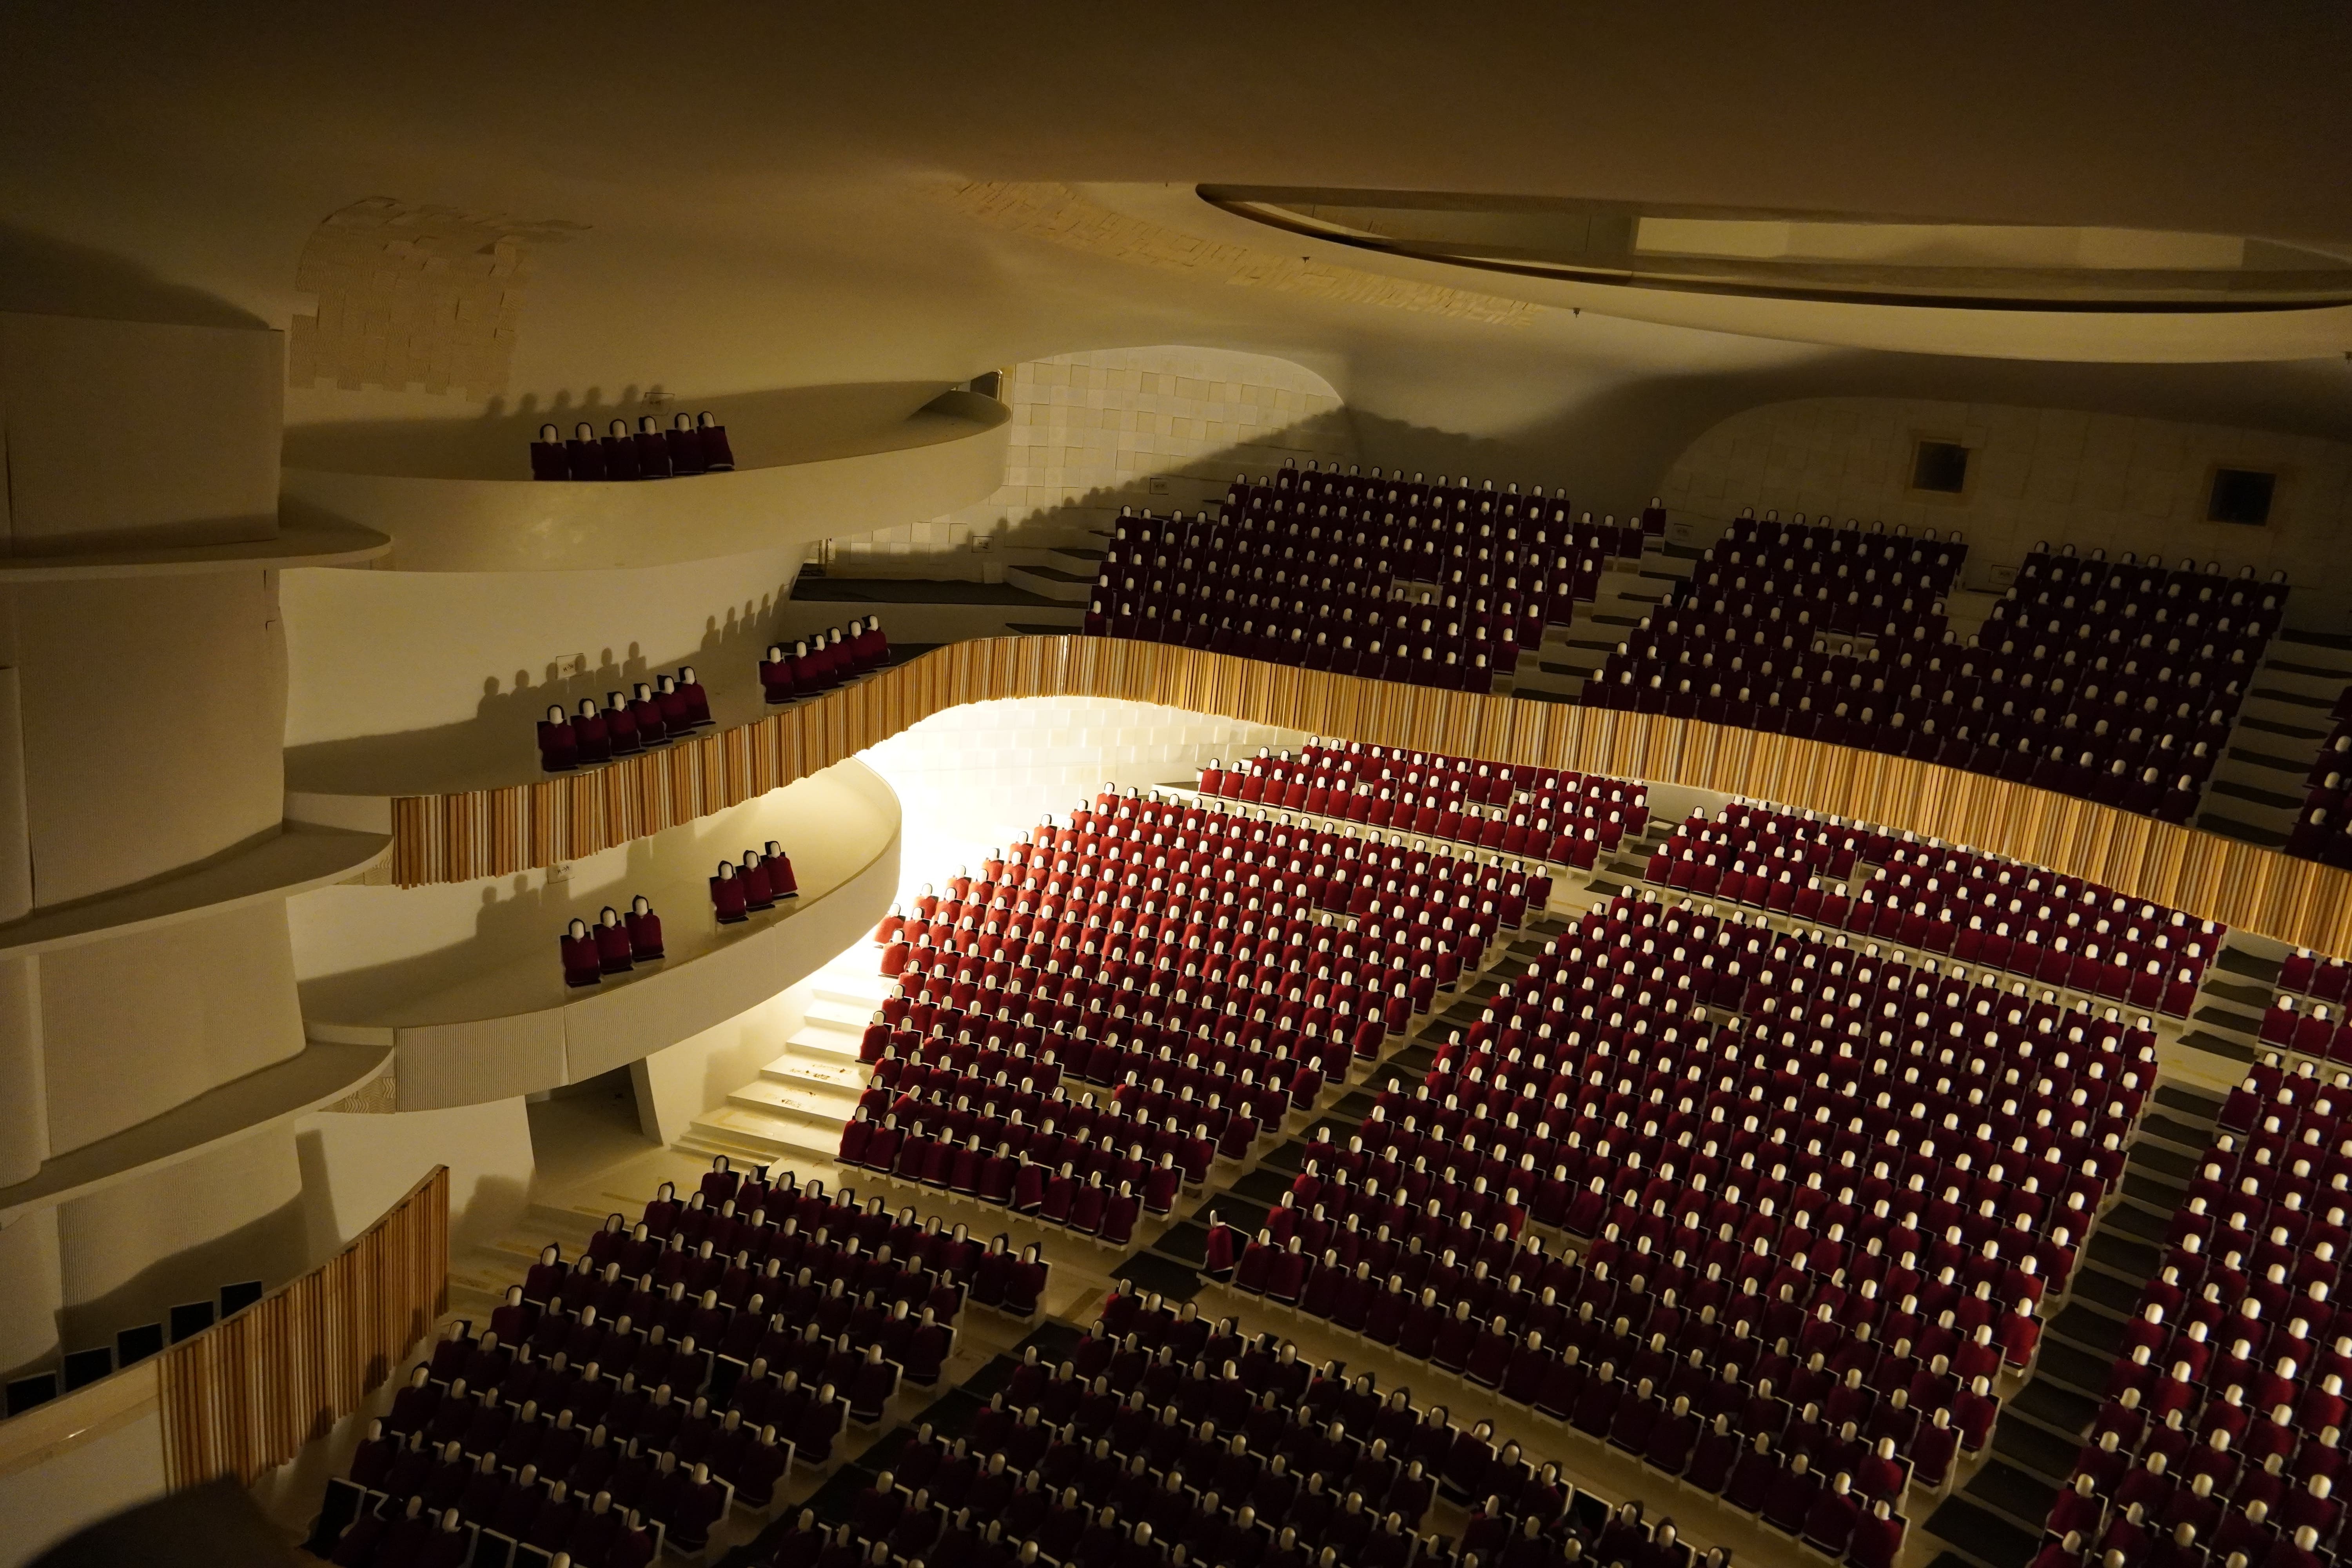 江維華教授5月6日新書發表會，特別展示台中歌劇院的1/10比例聲學模型，是世界上少數在建造後能留存展示的模型